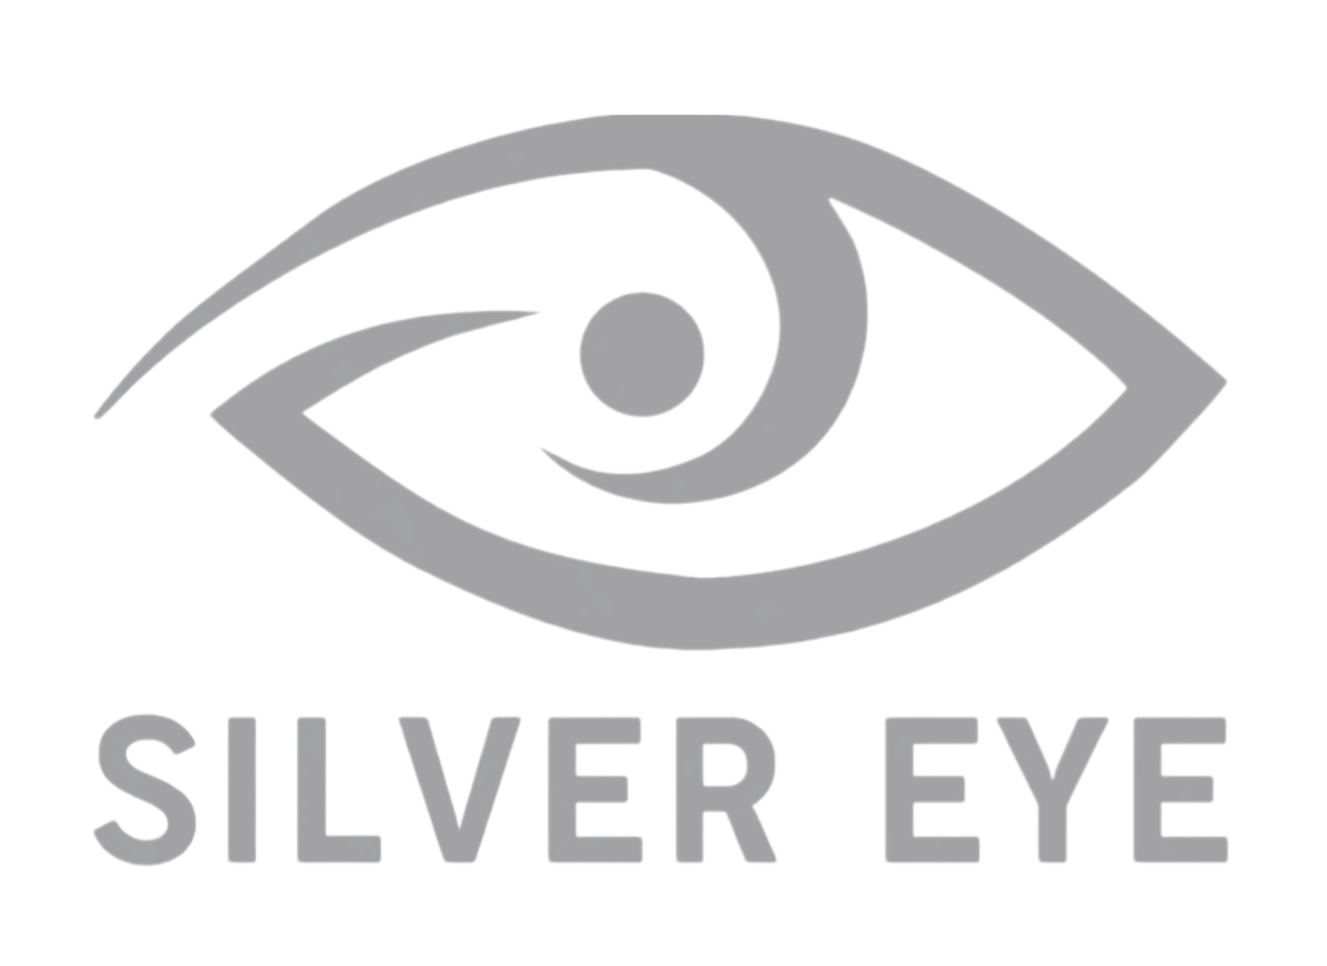 Silver eye - ЯКІСТЬ ПЕРЕВІРЕНА ЧАСОМ